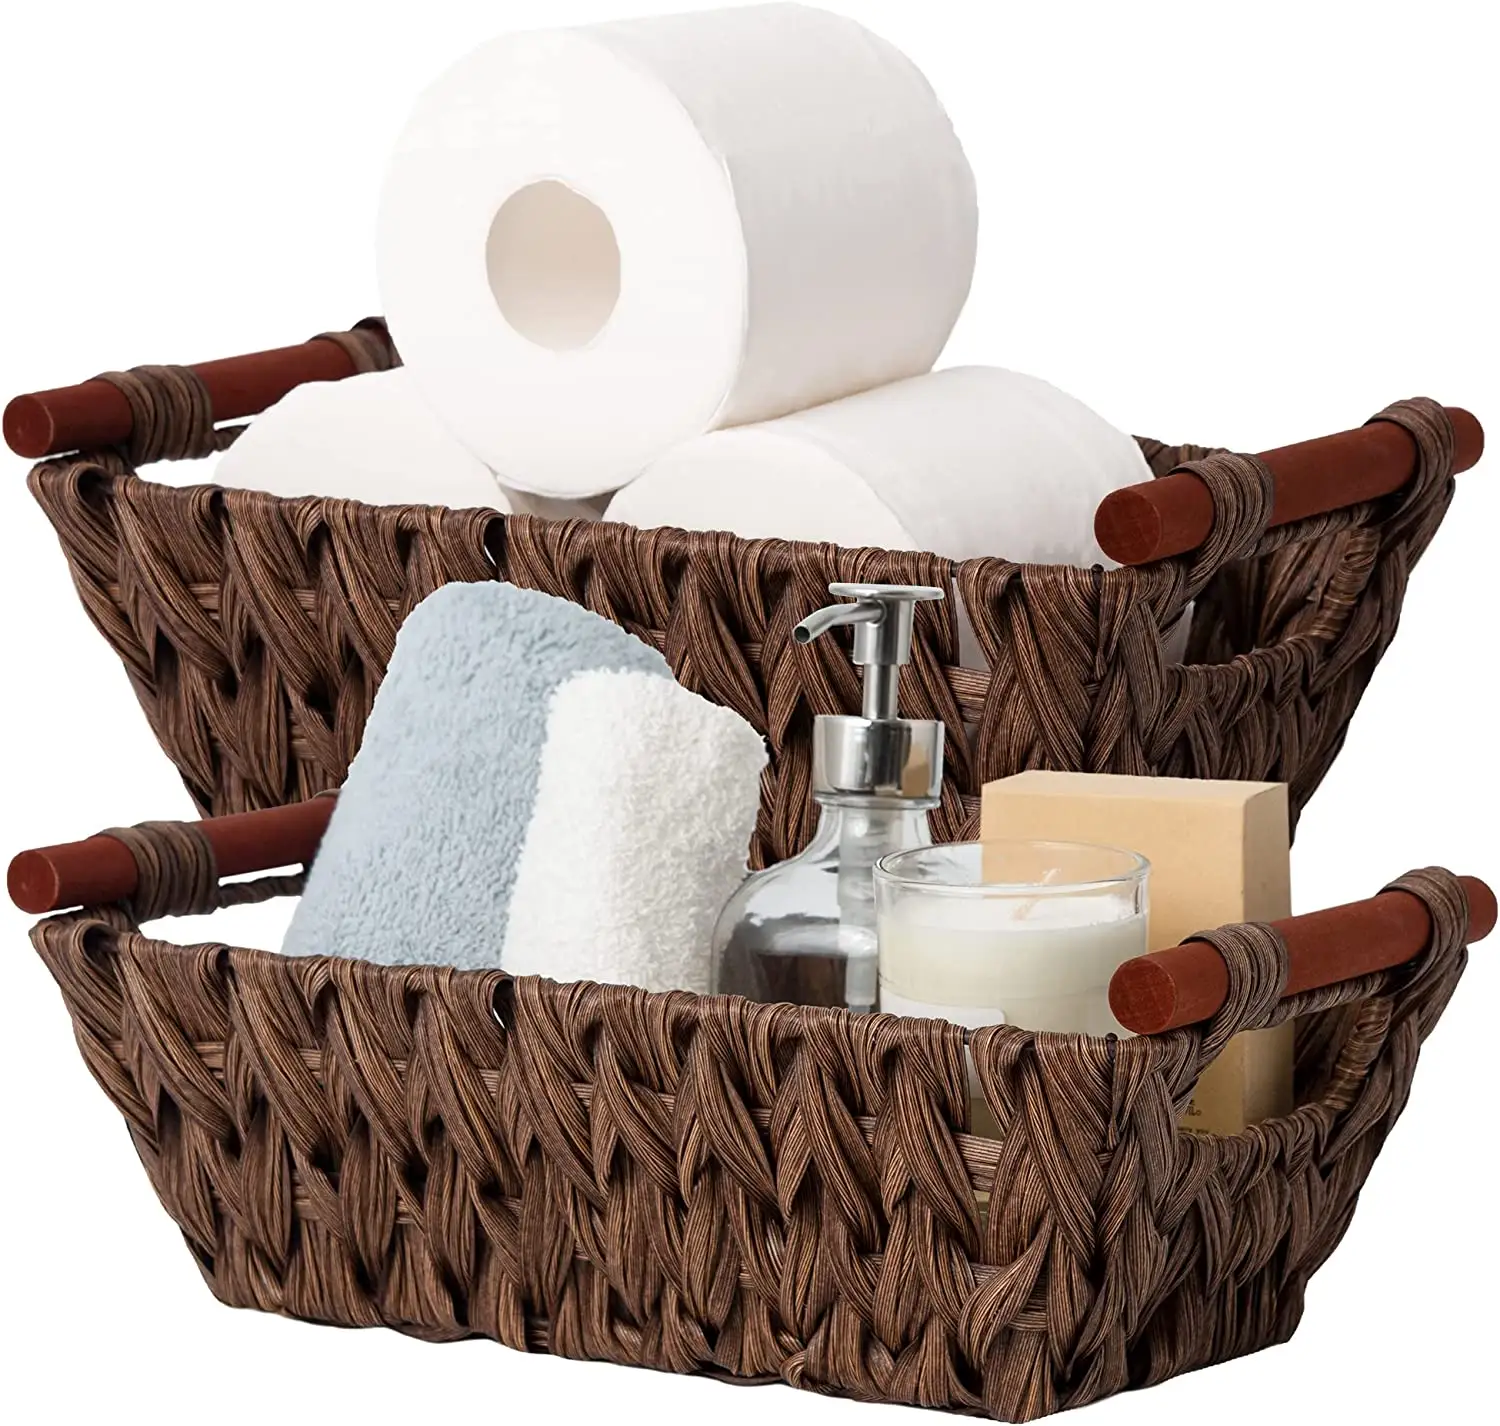 Cesta de vime impermeável marrom, cesta com punhos de madeira, presilhas de armazenamento de tecido para cozinha e banheiro